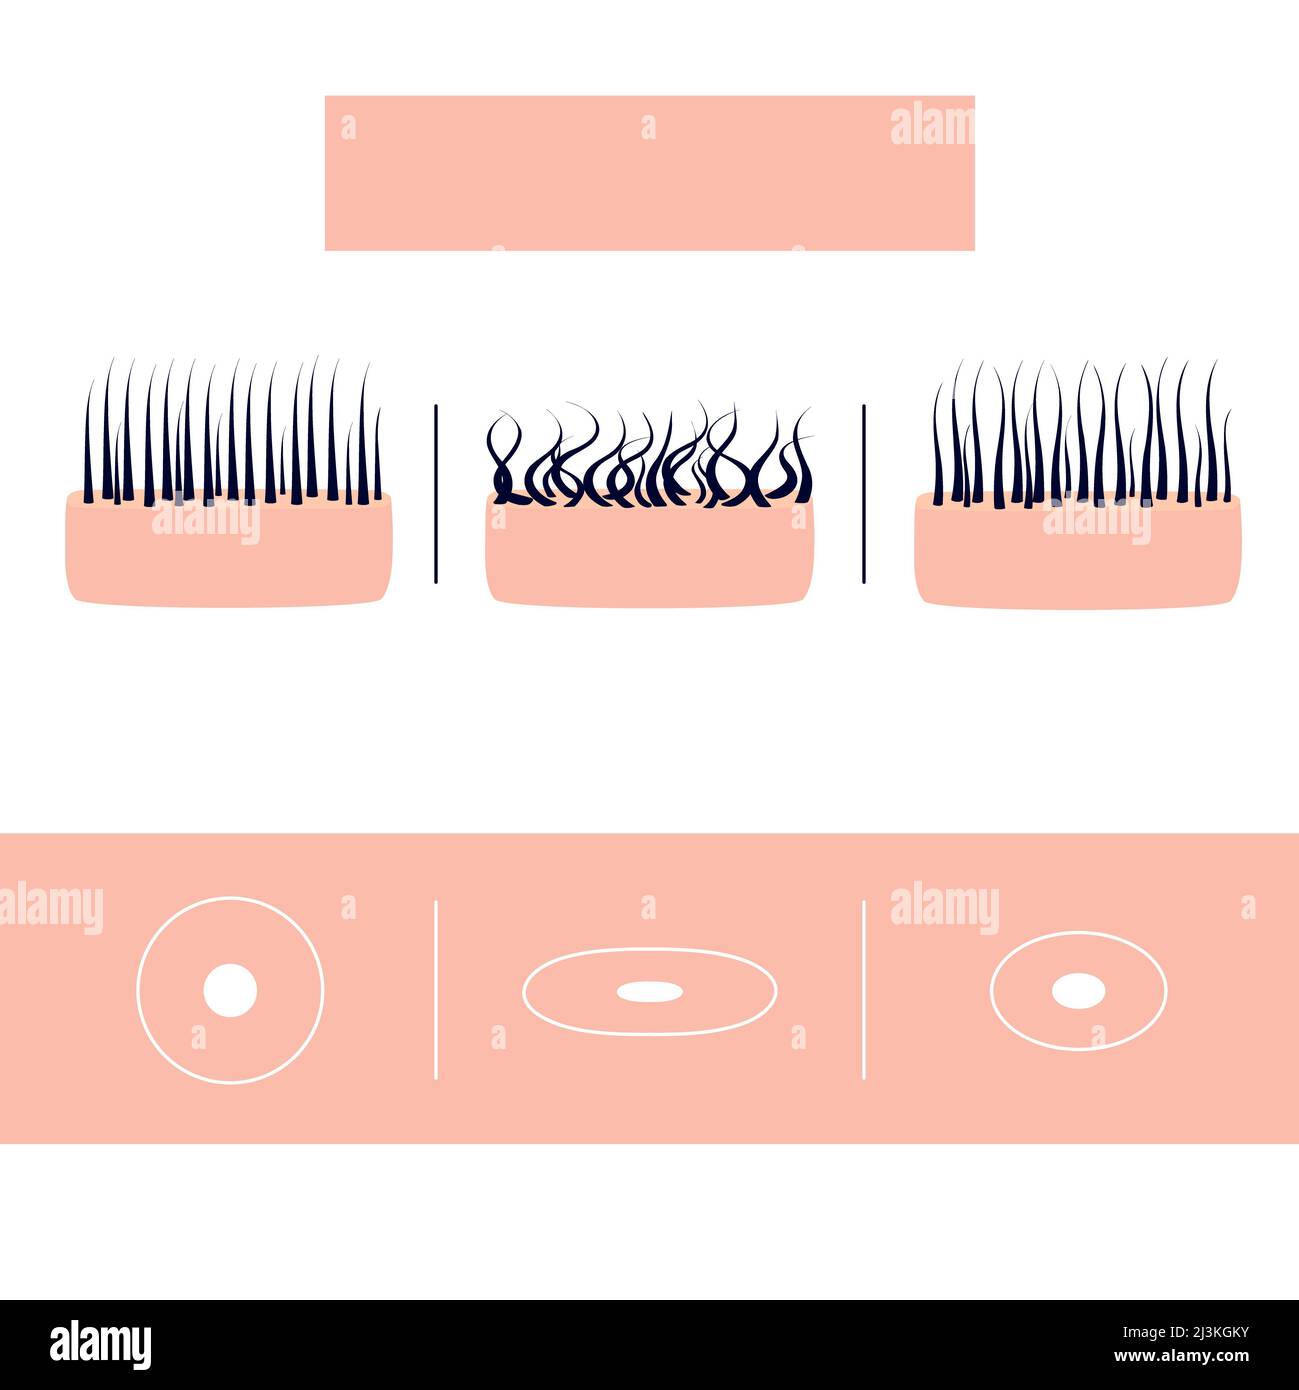 Types de cheveux, illustration conceptuelle Banque D'Images